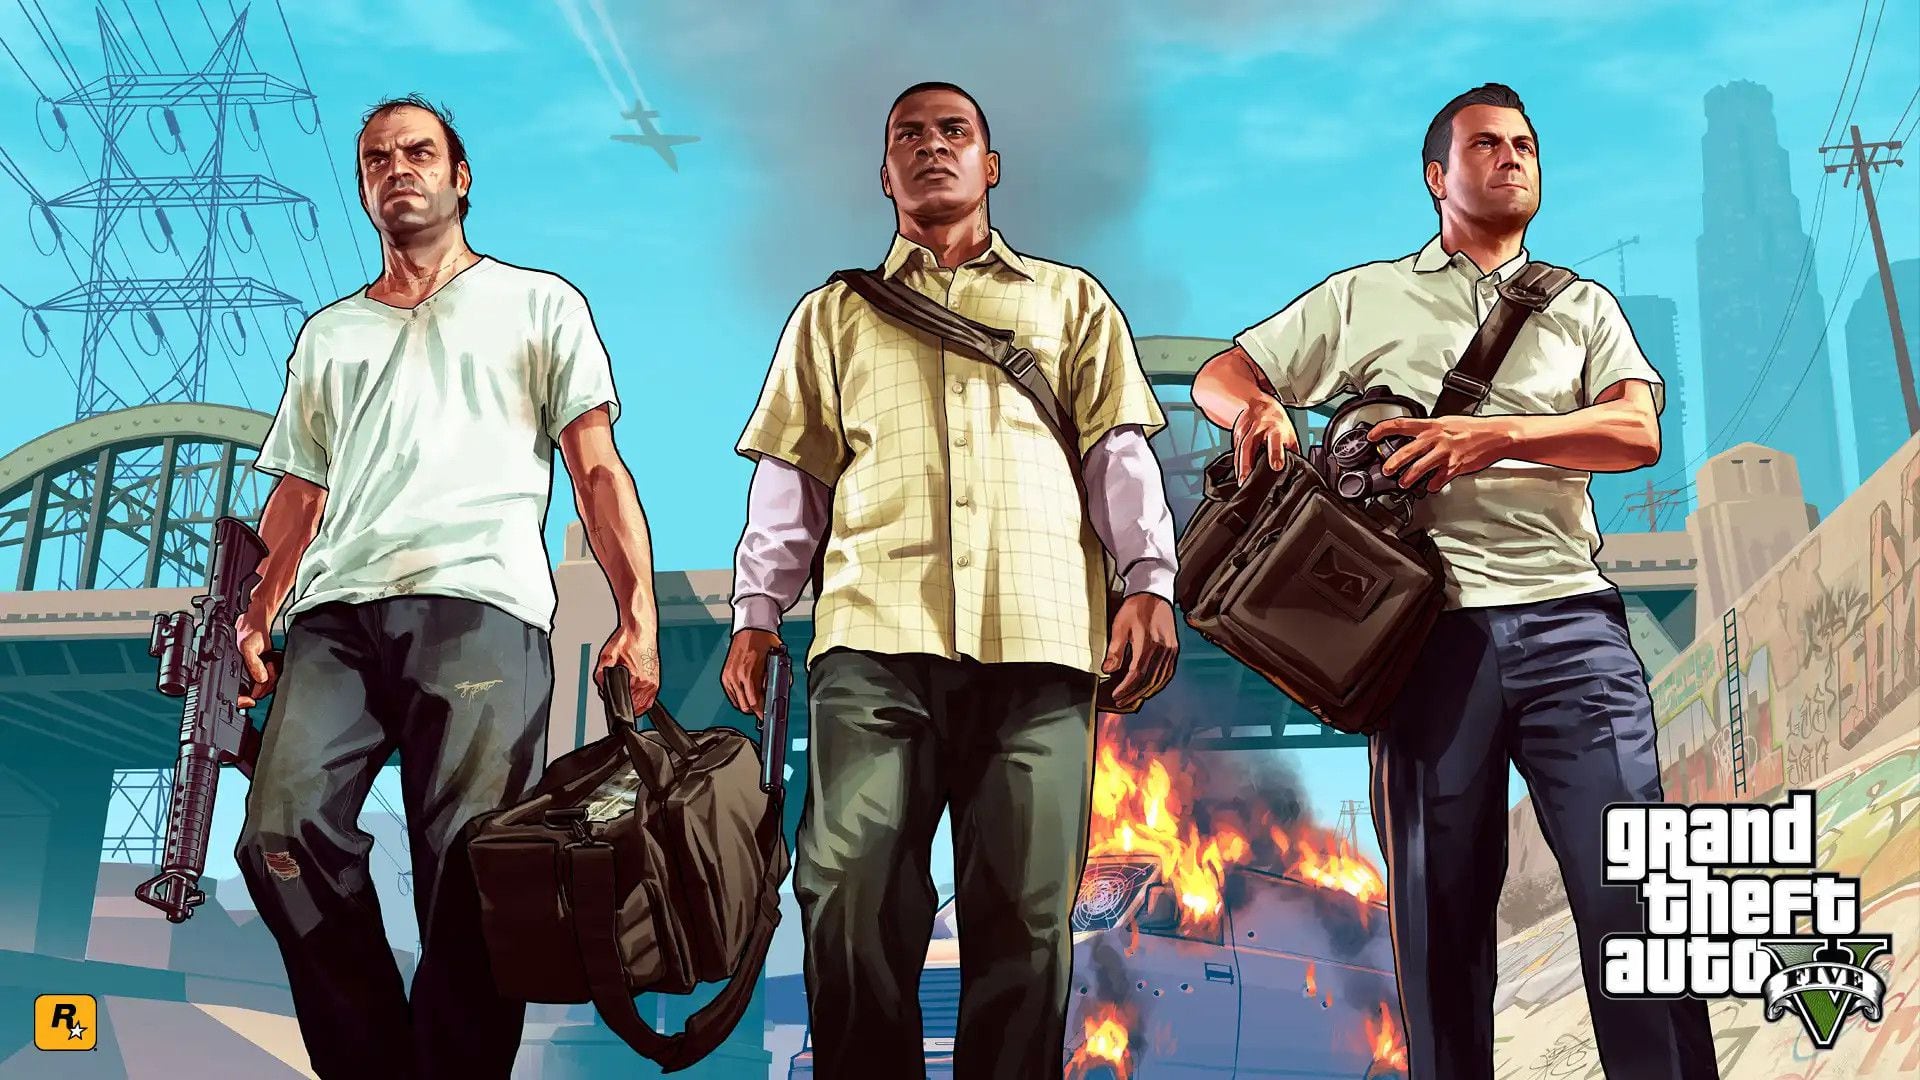 Grand Theft Auto V, de Rockstar Games.